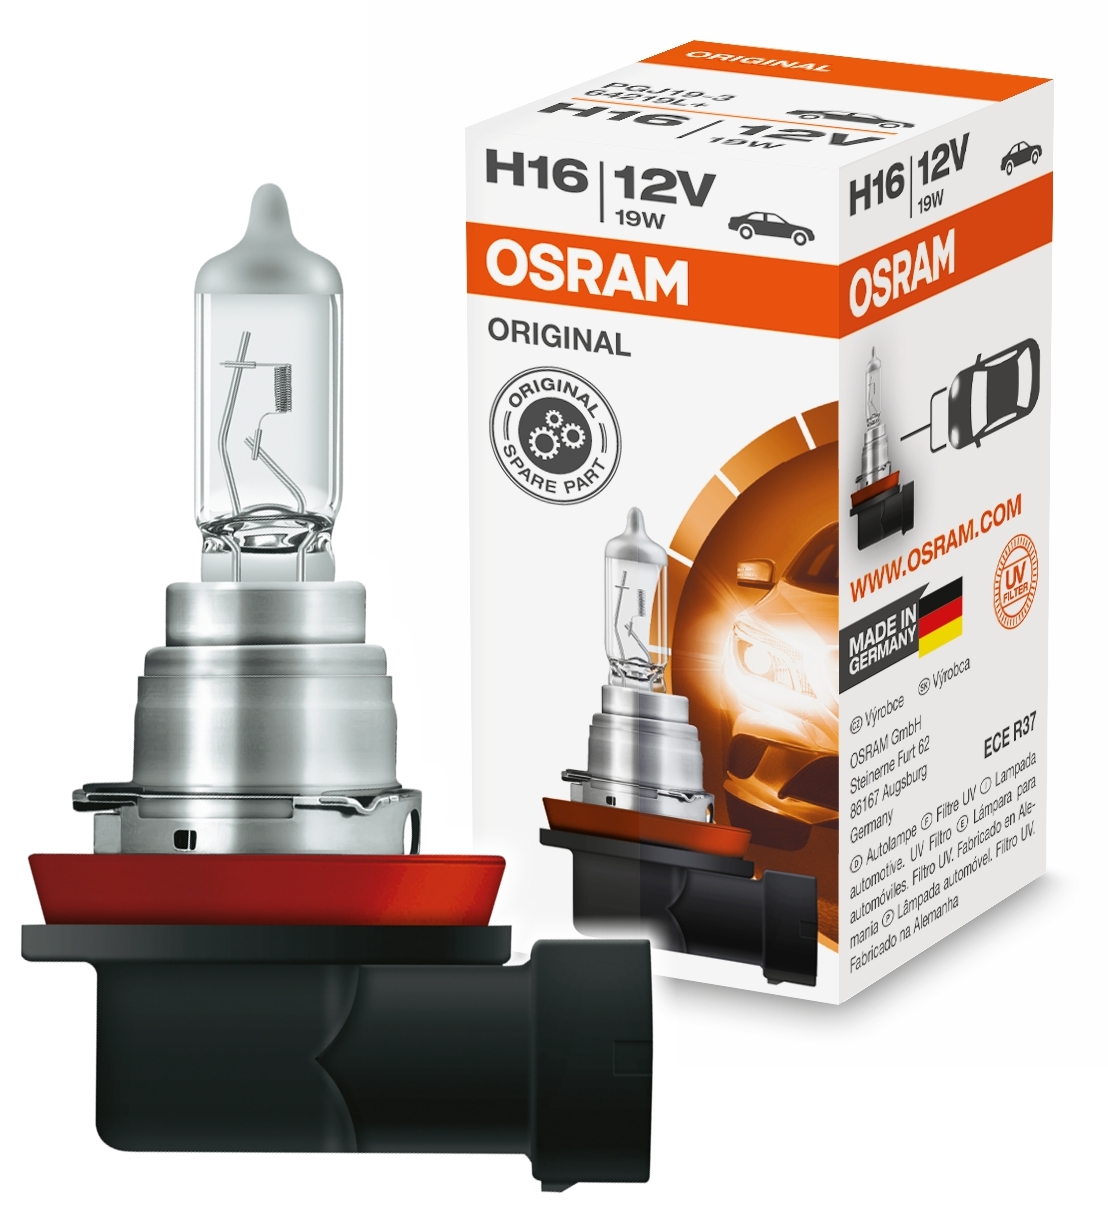  OSRAM Original Line H16 19w 12v